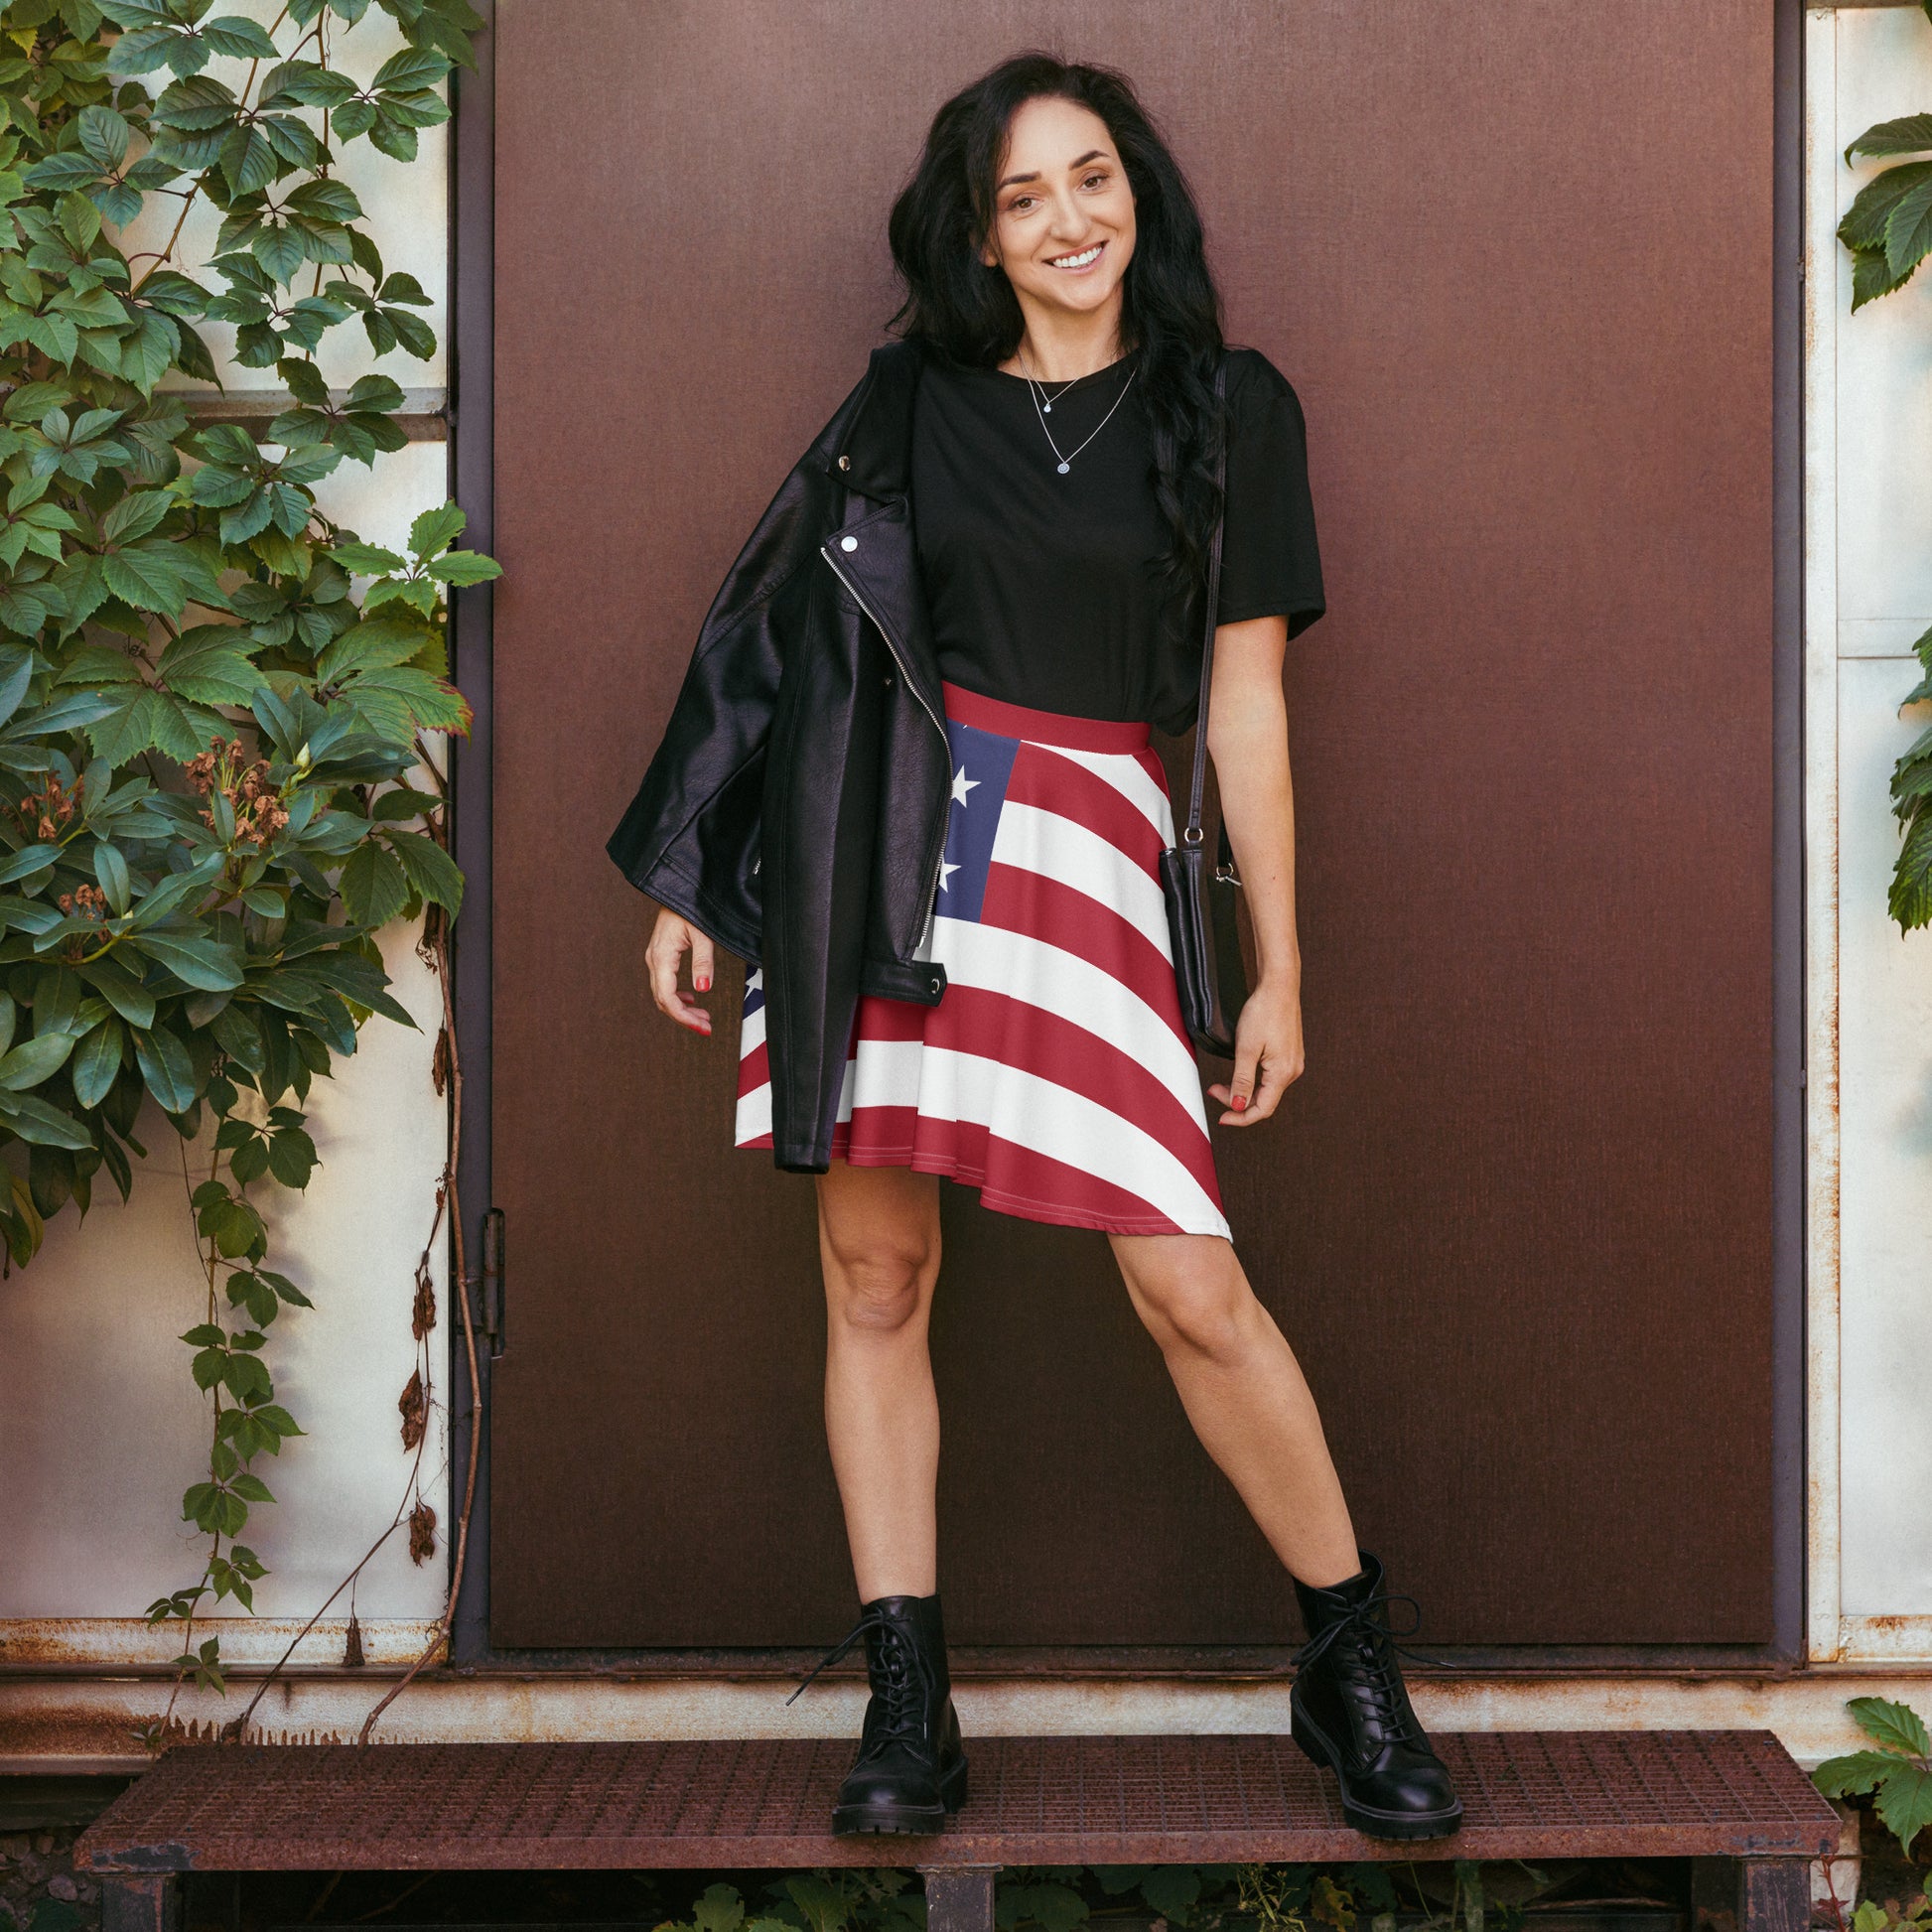 American flag themed clothing - Women's skirt